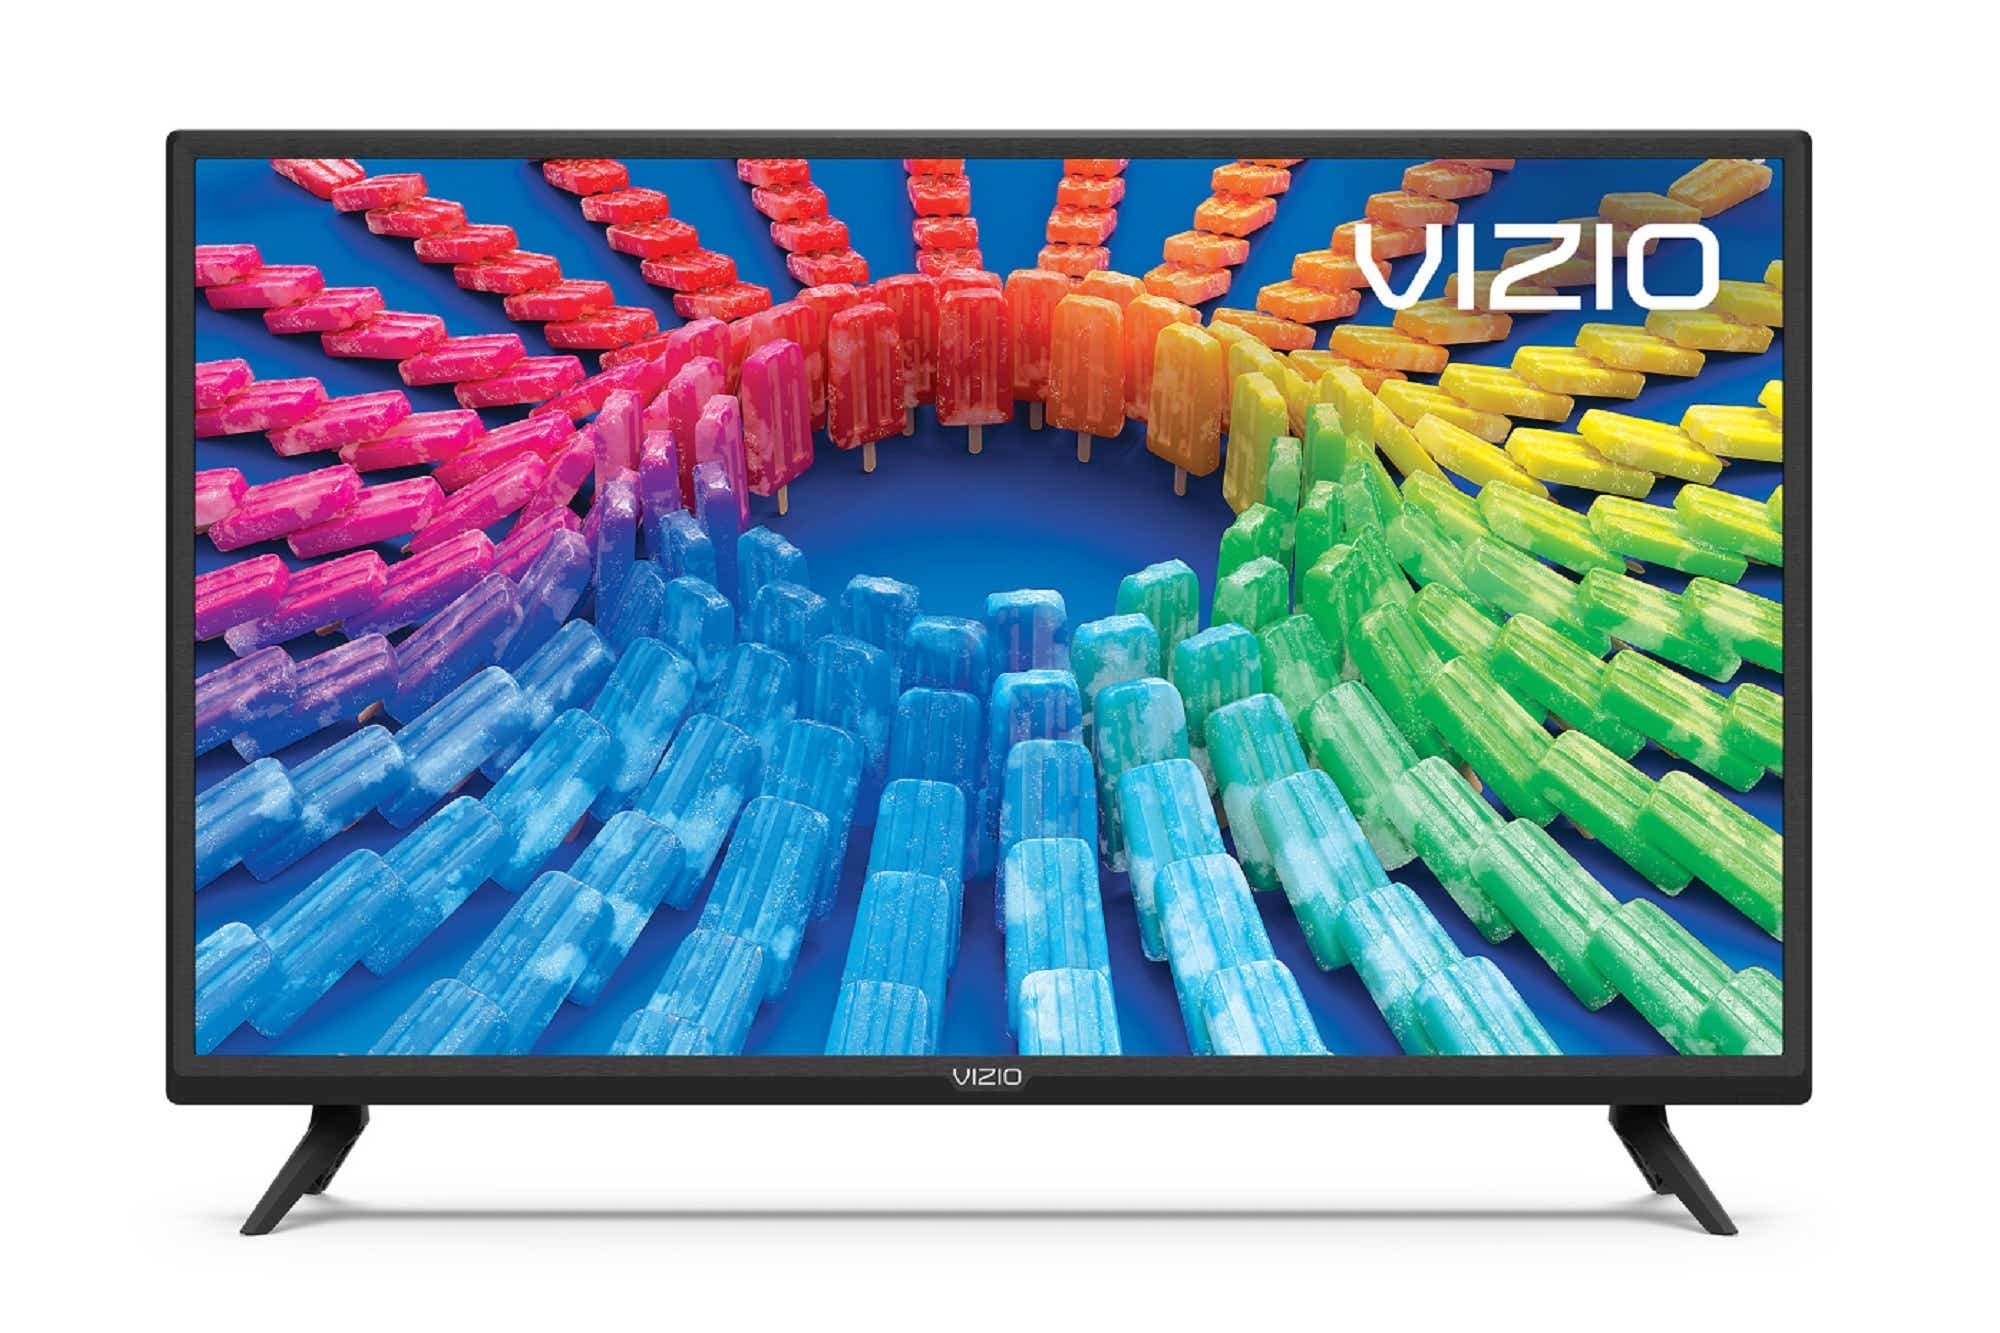 Vizio V-series 4K UHD LCD TV (50-inch class model V505-H19)